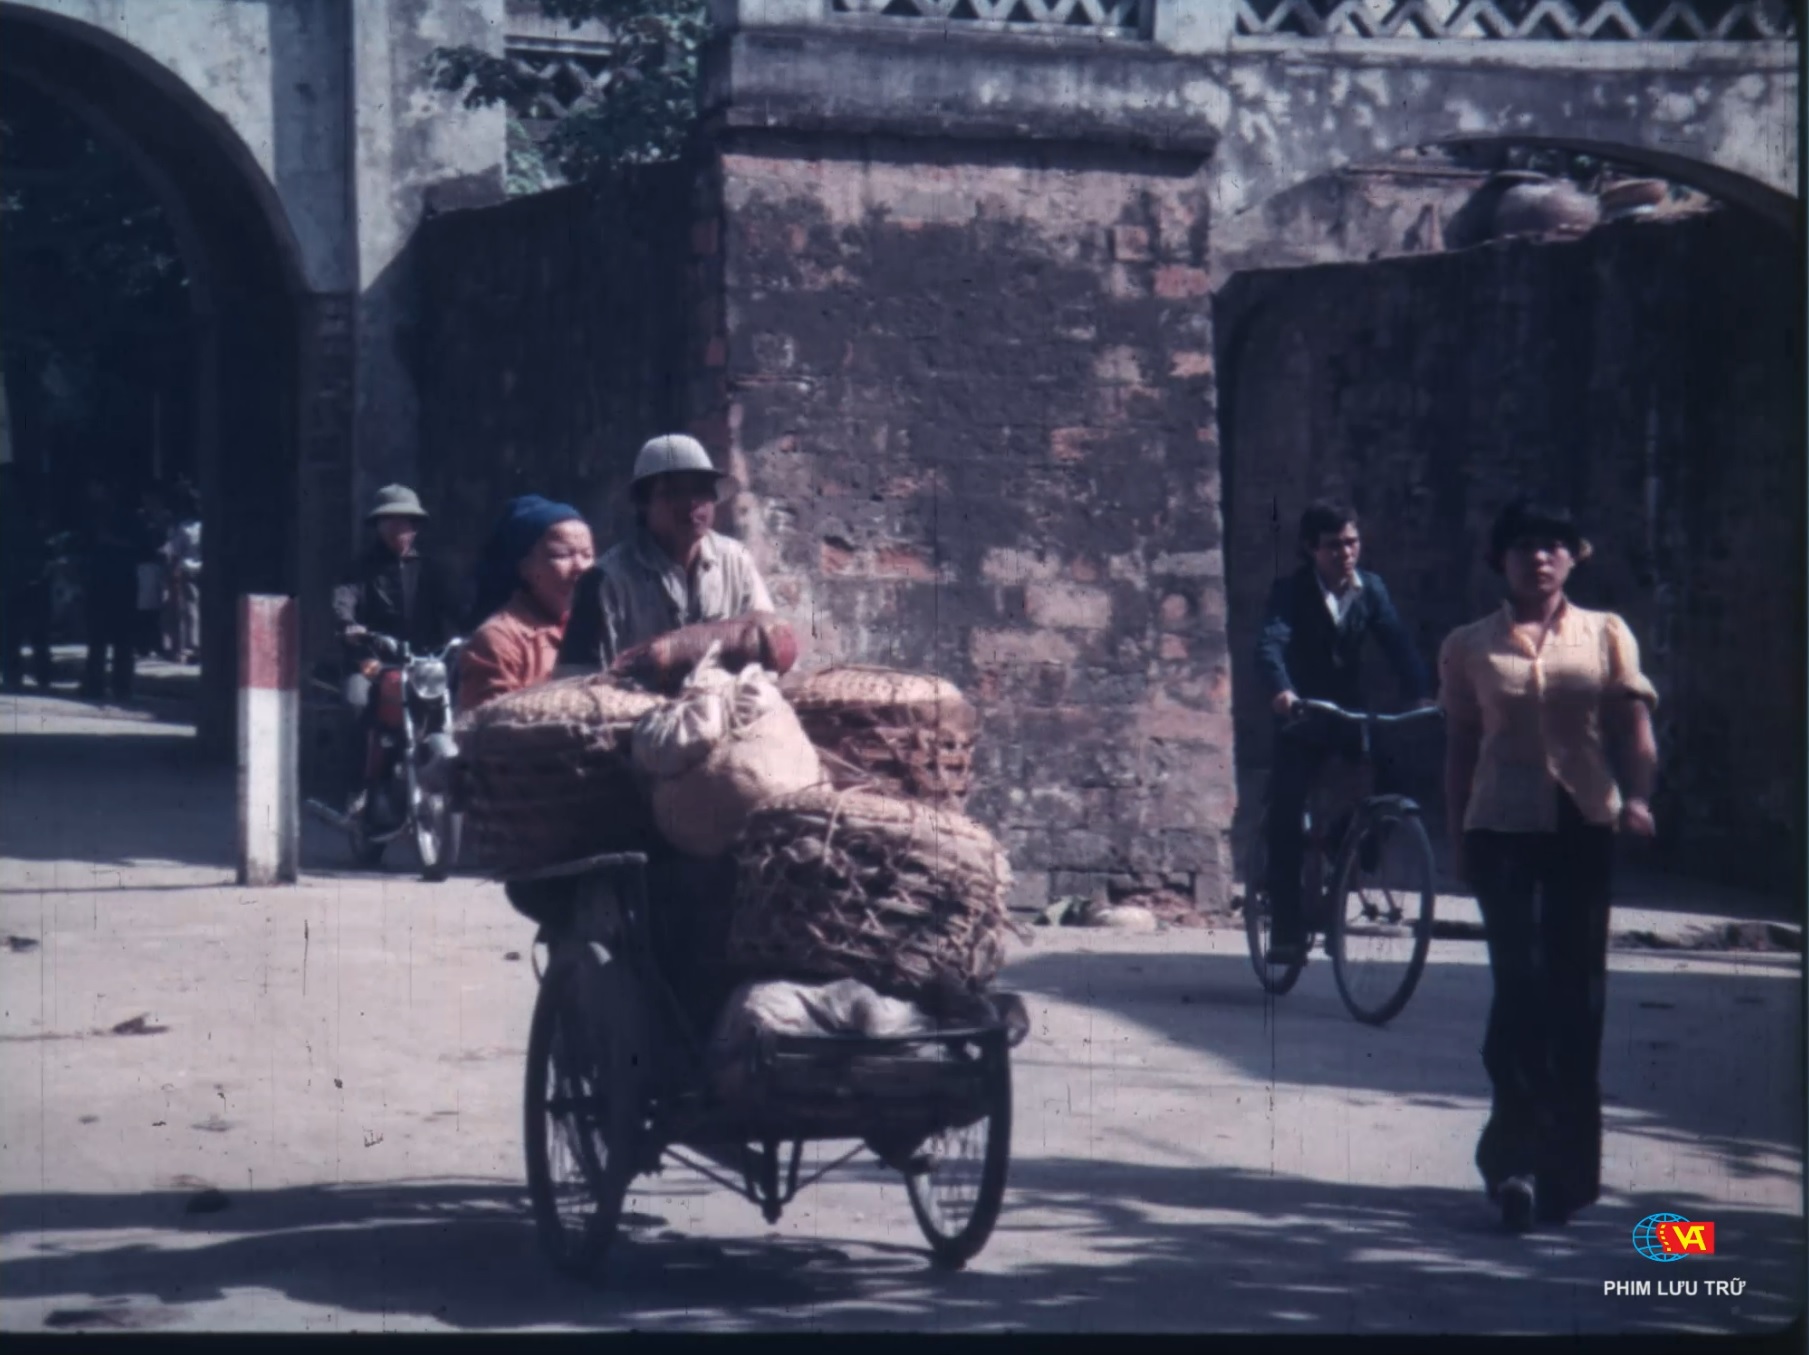 Hai bộ phim tài liệu đặc biệt về Hà Nội đến với khán giả nhân kỷ niệm 68 năm ngày Giải phóng Thủ đô - Ảnh 3.